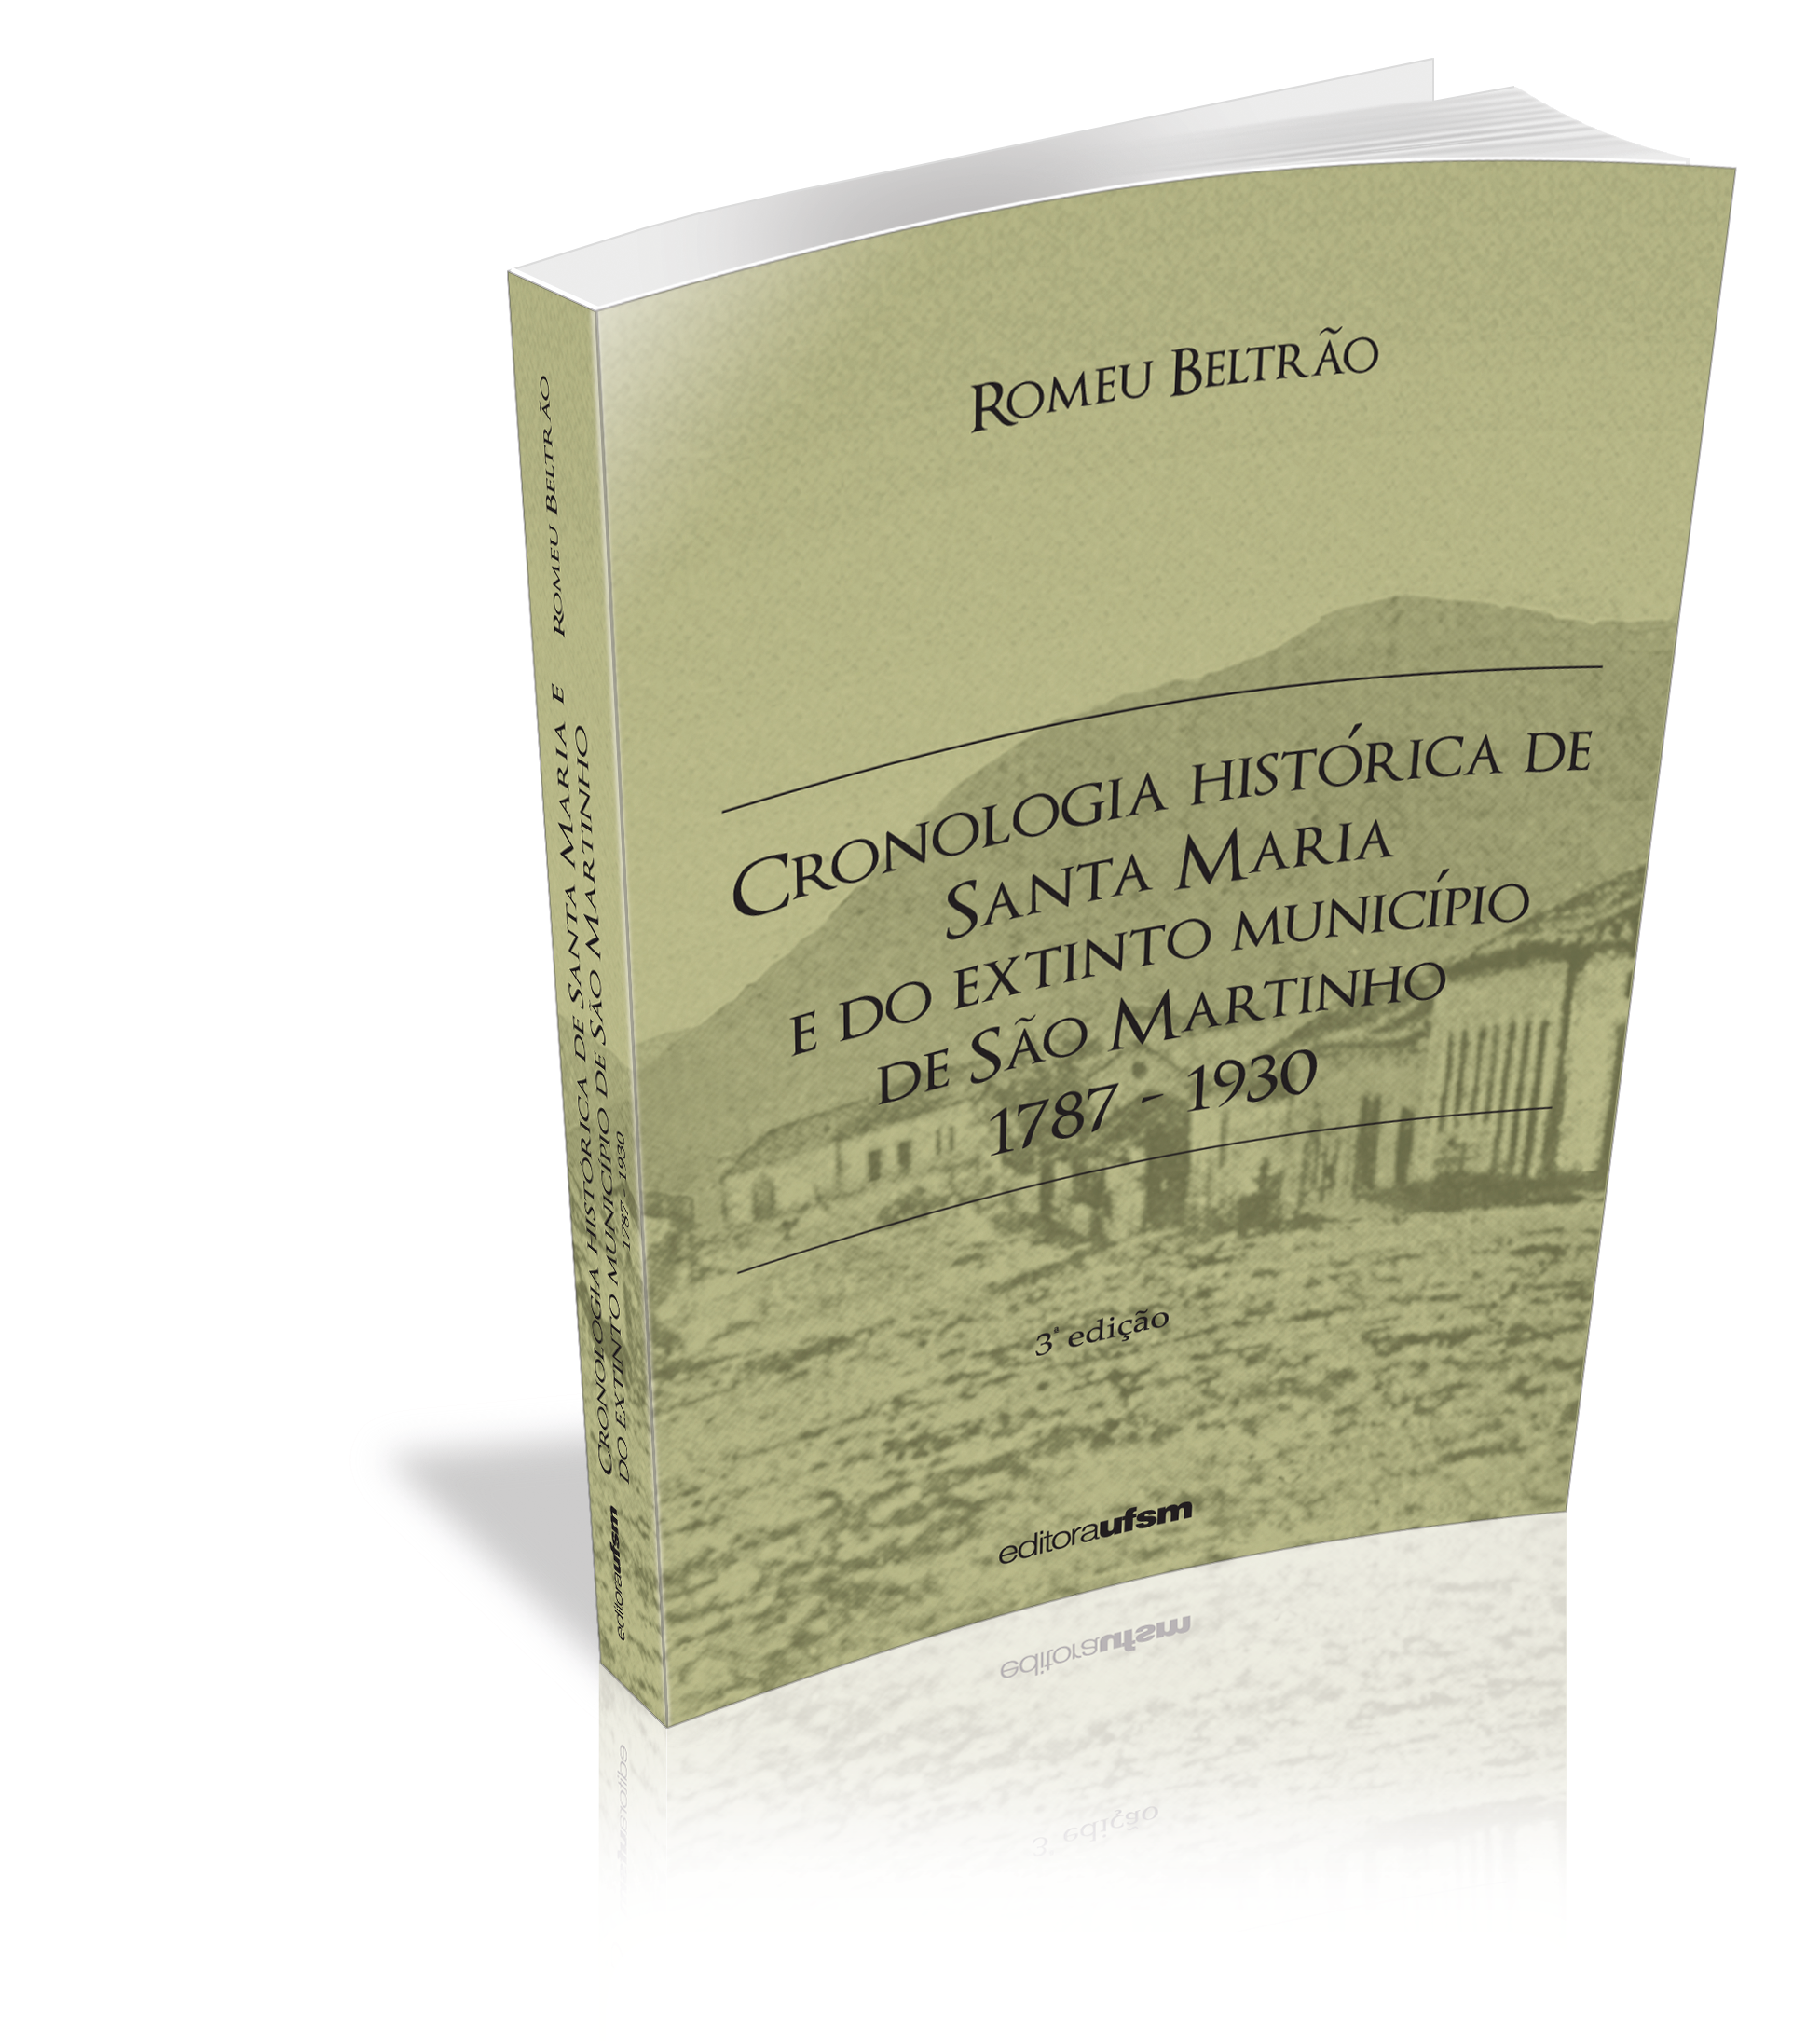 Capa do livro Cronologia Histórica de Santa Maria e do Extinto Município de São Martinho